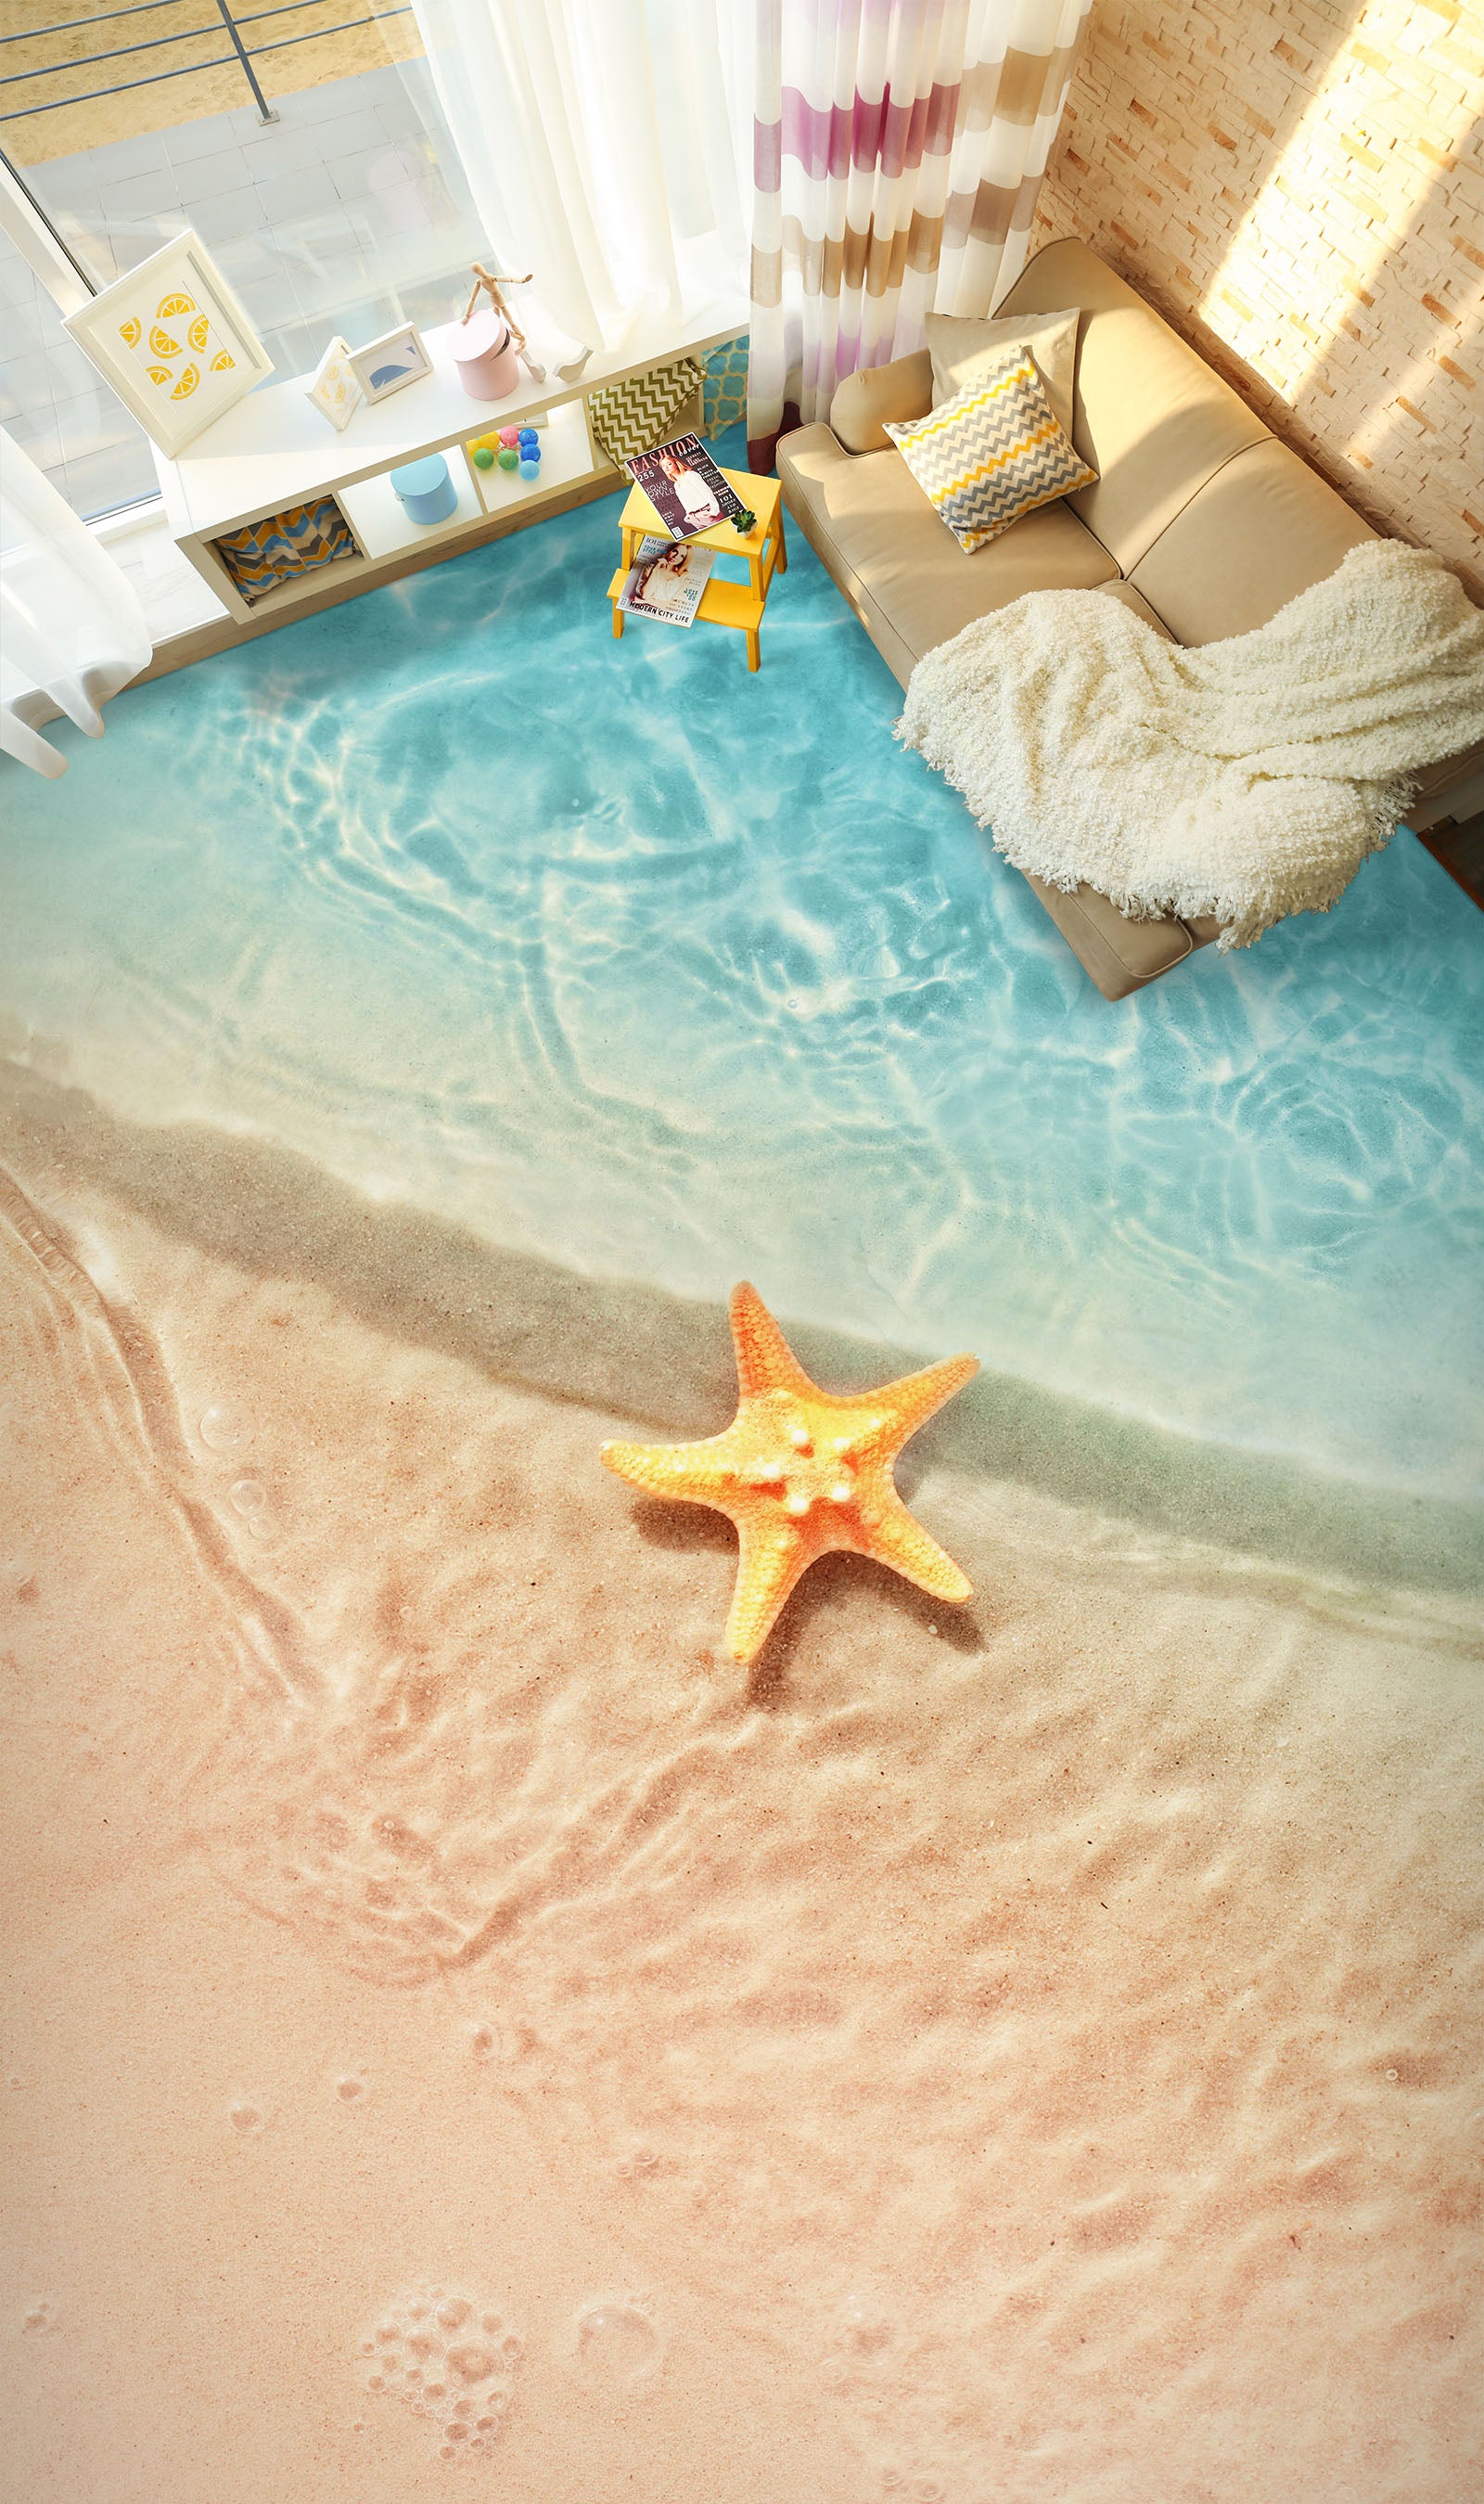 3D Cute Yellow Starfish 203 Floor Mural  Wallpaper Murals Rug & Mat Print Epoxy waterproof bath floor